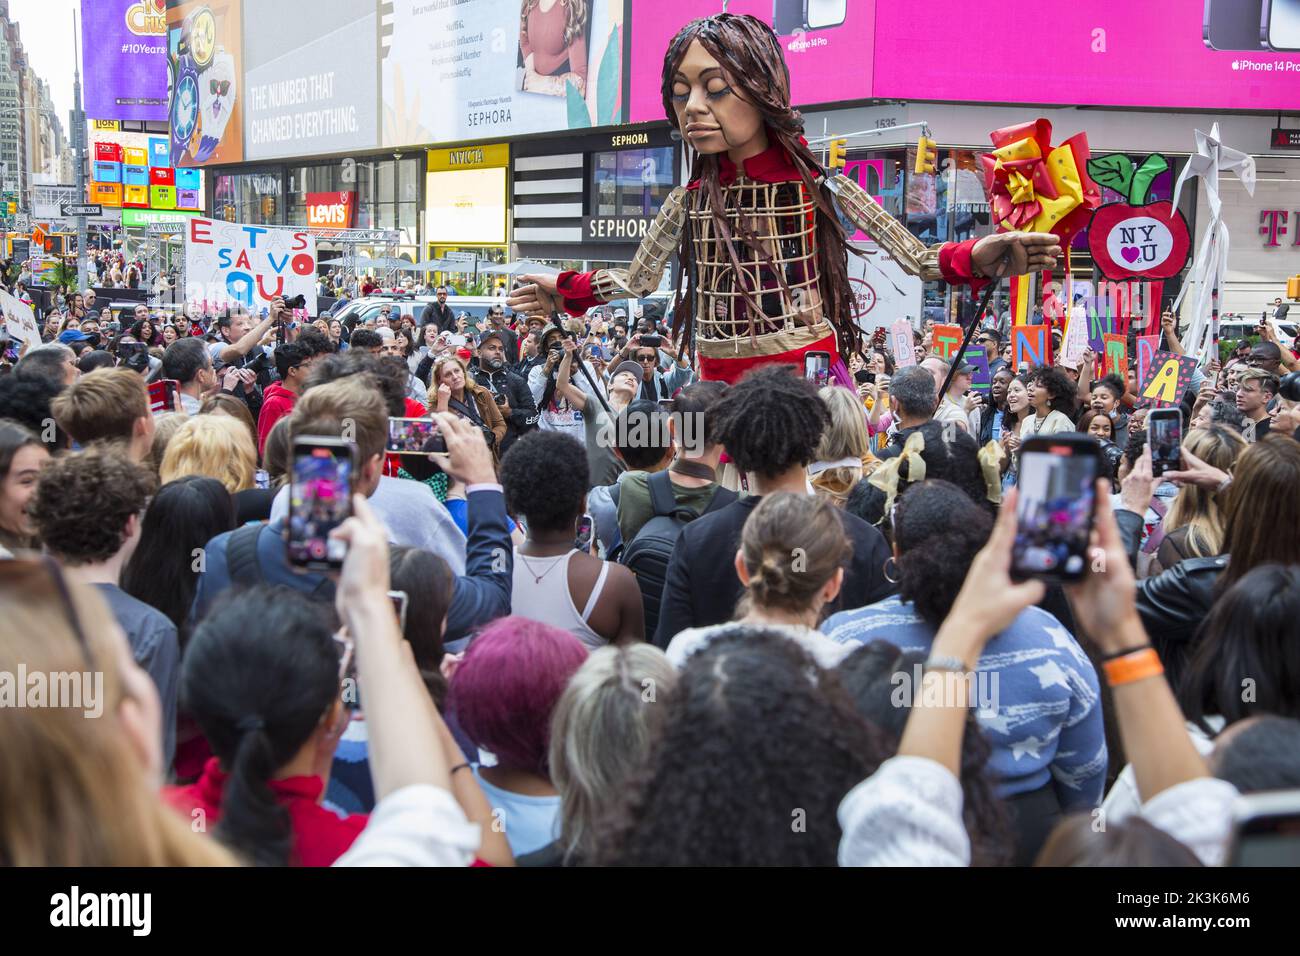 Little Amal y rencontre des lycéens et tous les habitants de Times Square à New York, en diffusant sa mesure de soins pour tous les réfugiés, les immigrants et les personnes marginalisées. Little Amal est la marionnette géante d'une jeune fille réfugiée syrienne de 10 ans, qui a voyagé plus de 9 000km ans avec son message d'espoir et de solidarité pour les personnes déplacées partout dans le monde. De 14 septembre – 2 octobre Little Amal marche New York en partenariat avec l’entrepôt de St. Ann. Elle explorera les cinq quartiers de New York, rencontrera des artistes, des leaders civiques, des groupes communautaires et de jeunes New-Yorkais de tous horizons. Banque D'Images